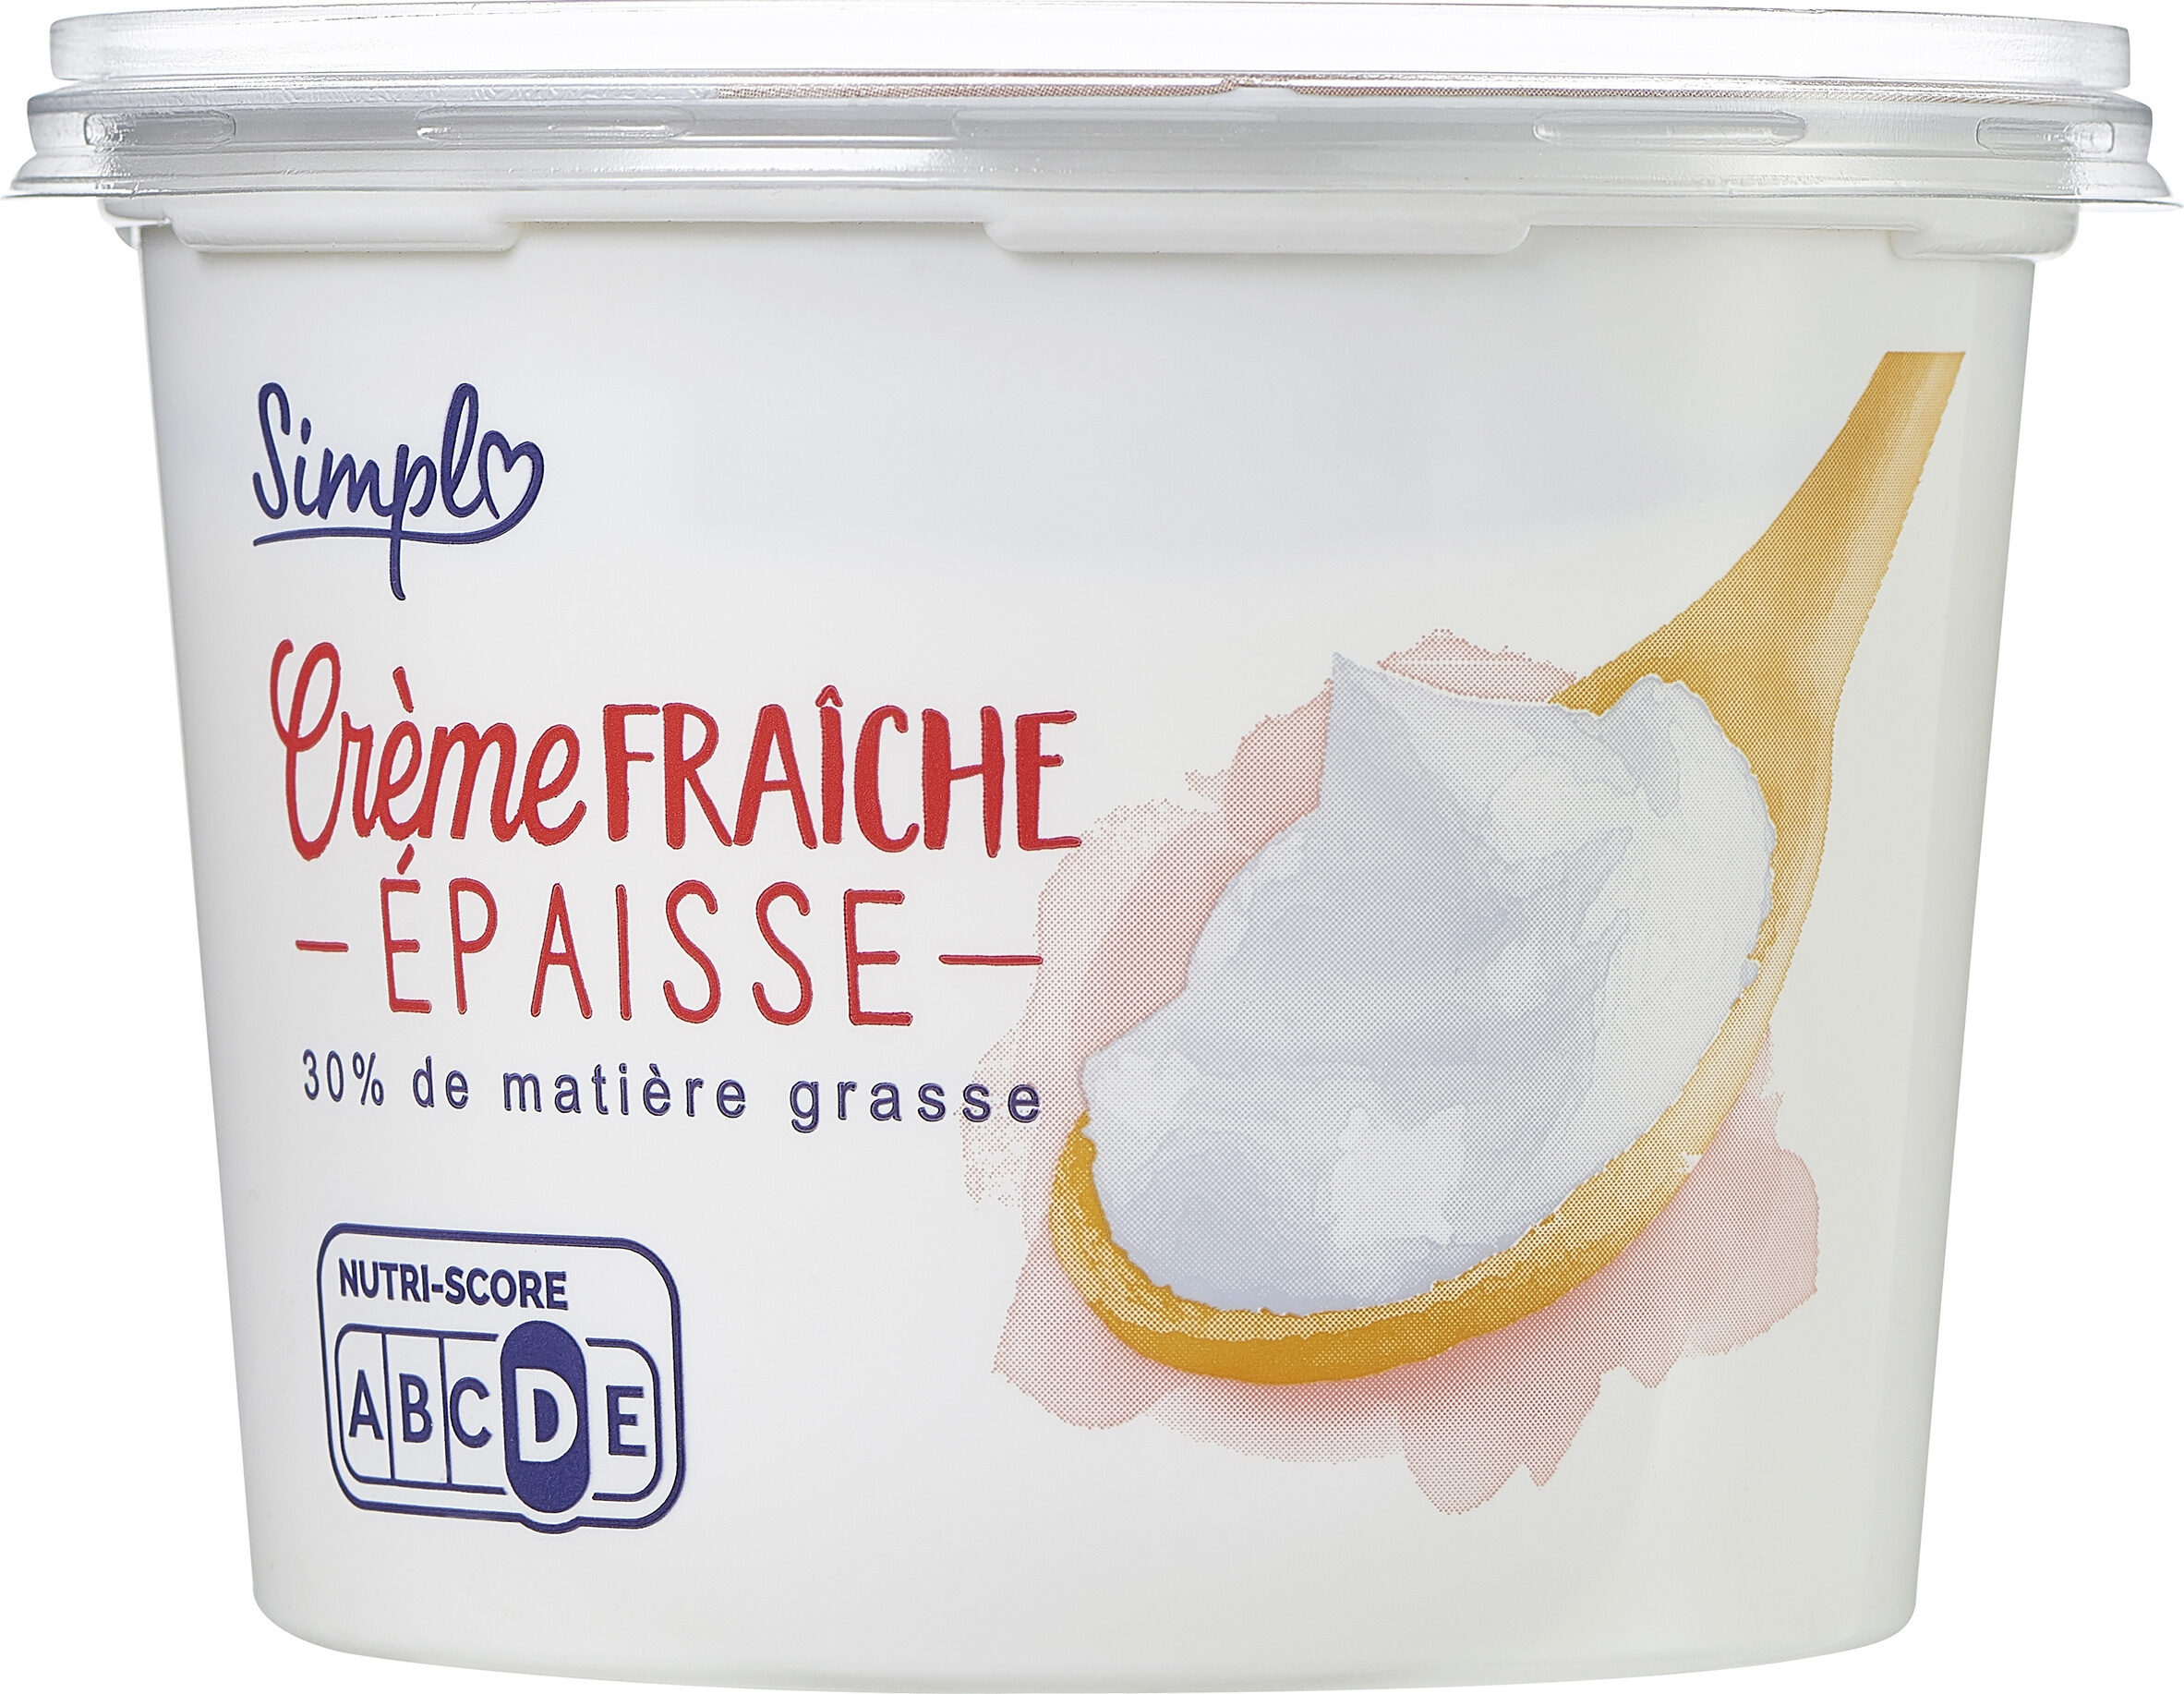 Crème fraîche épaisse - Product - fr